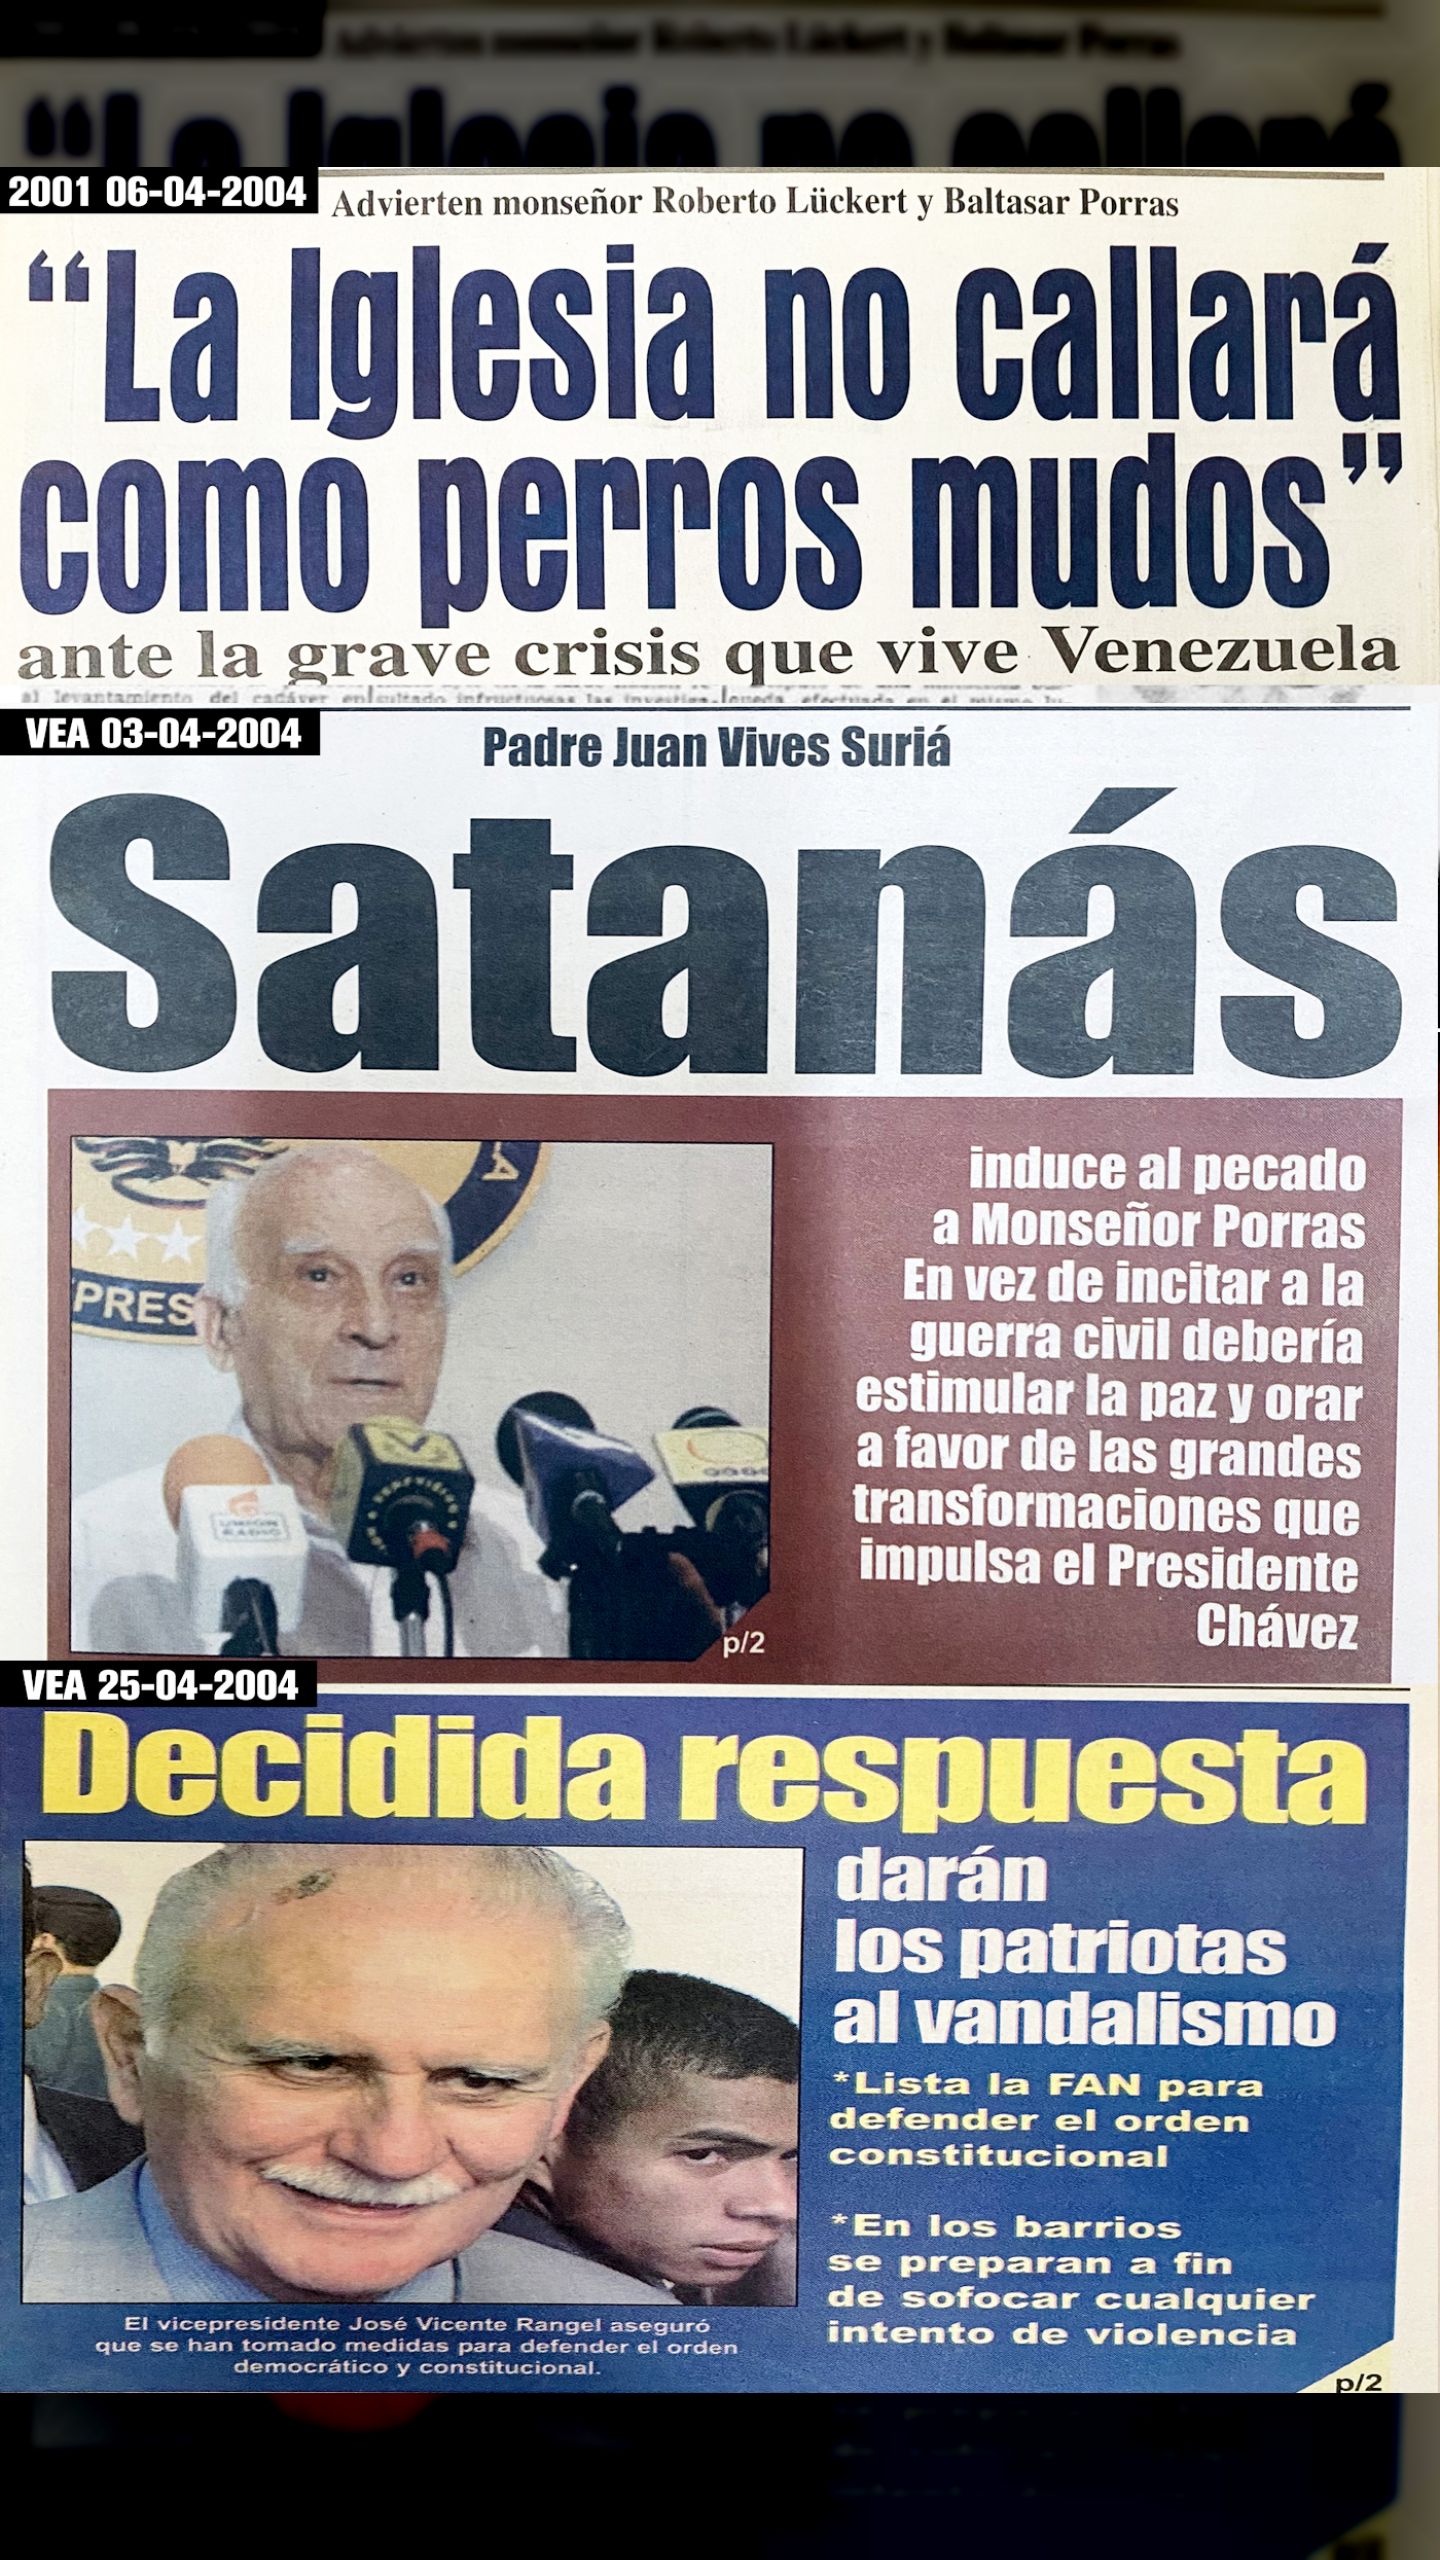 SATANÁS Induce al pecado a Monseñor Porras (Diario VEA, 03 de abril 2004)